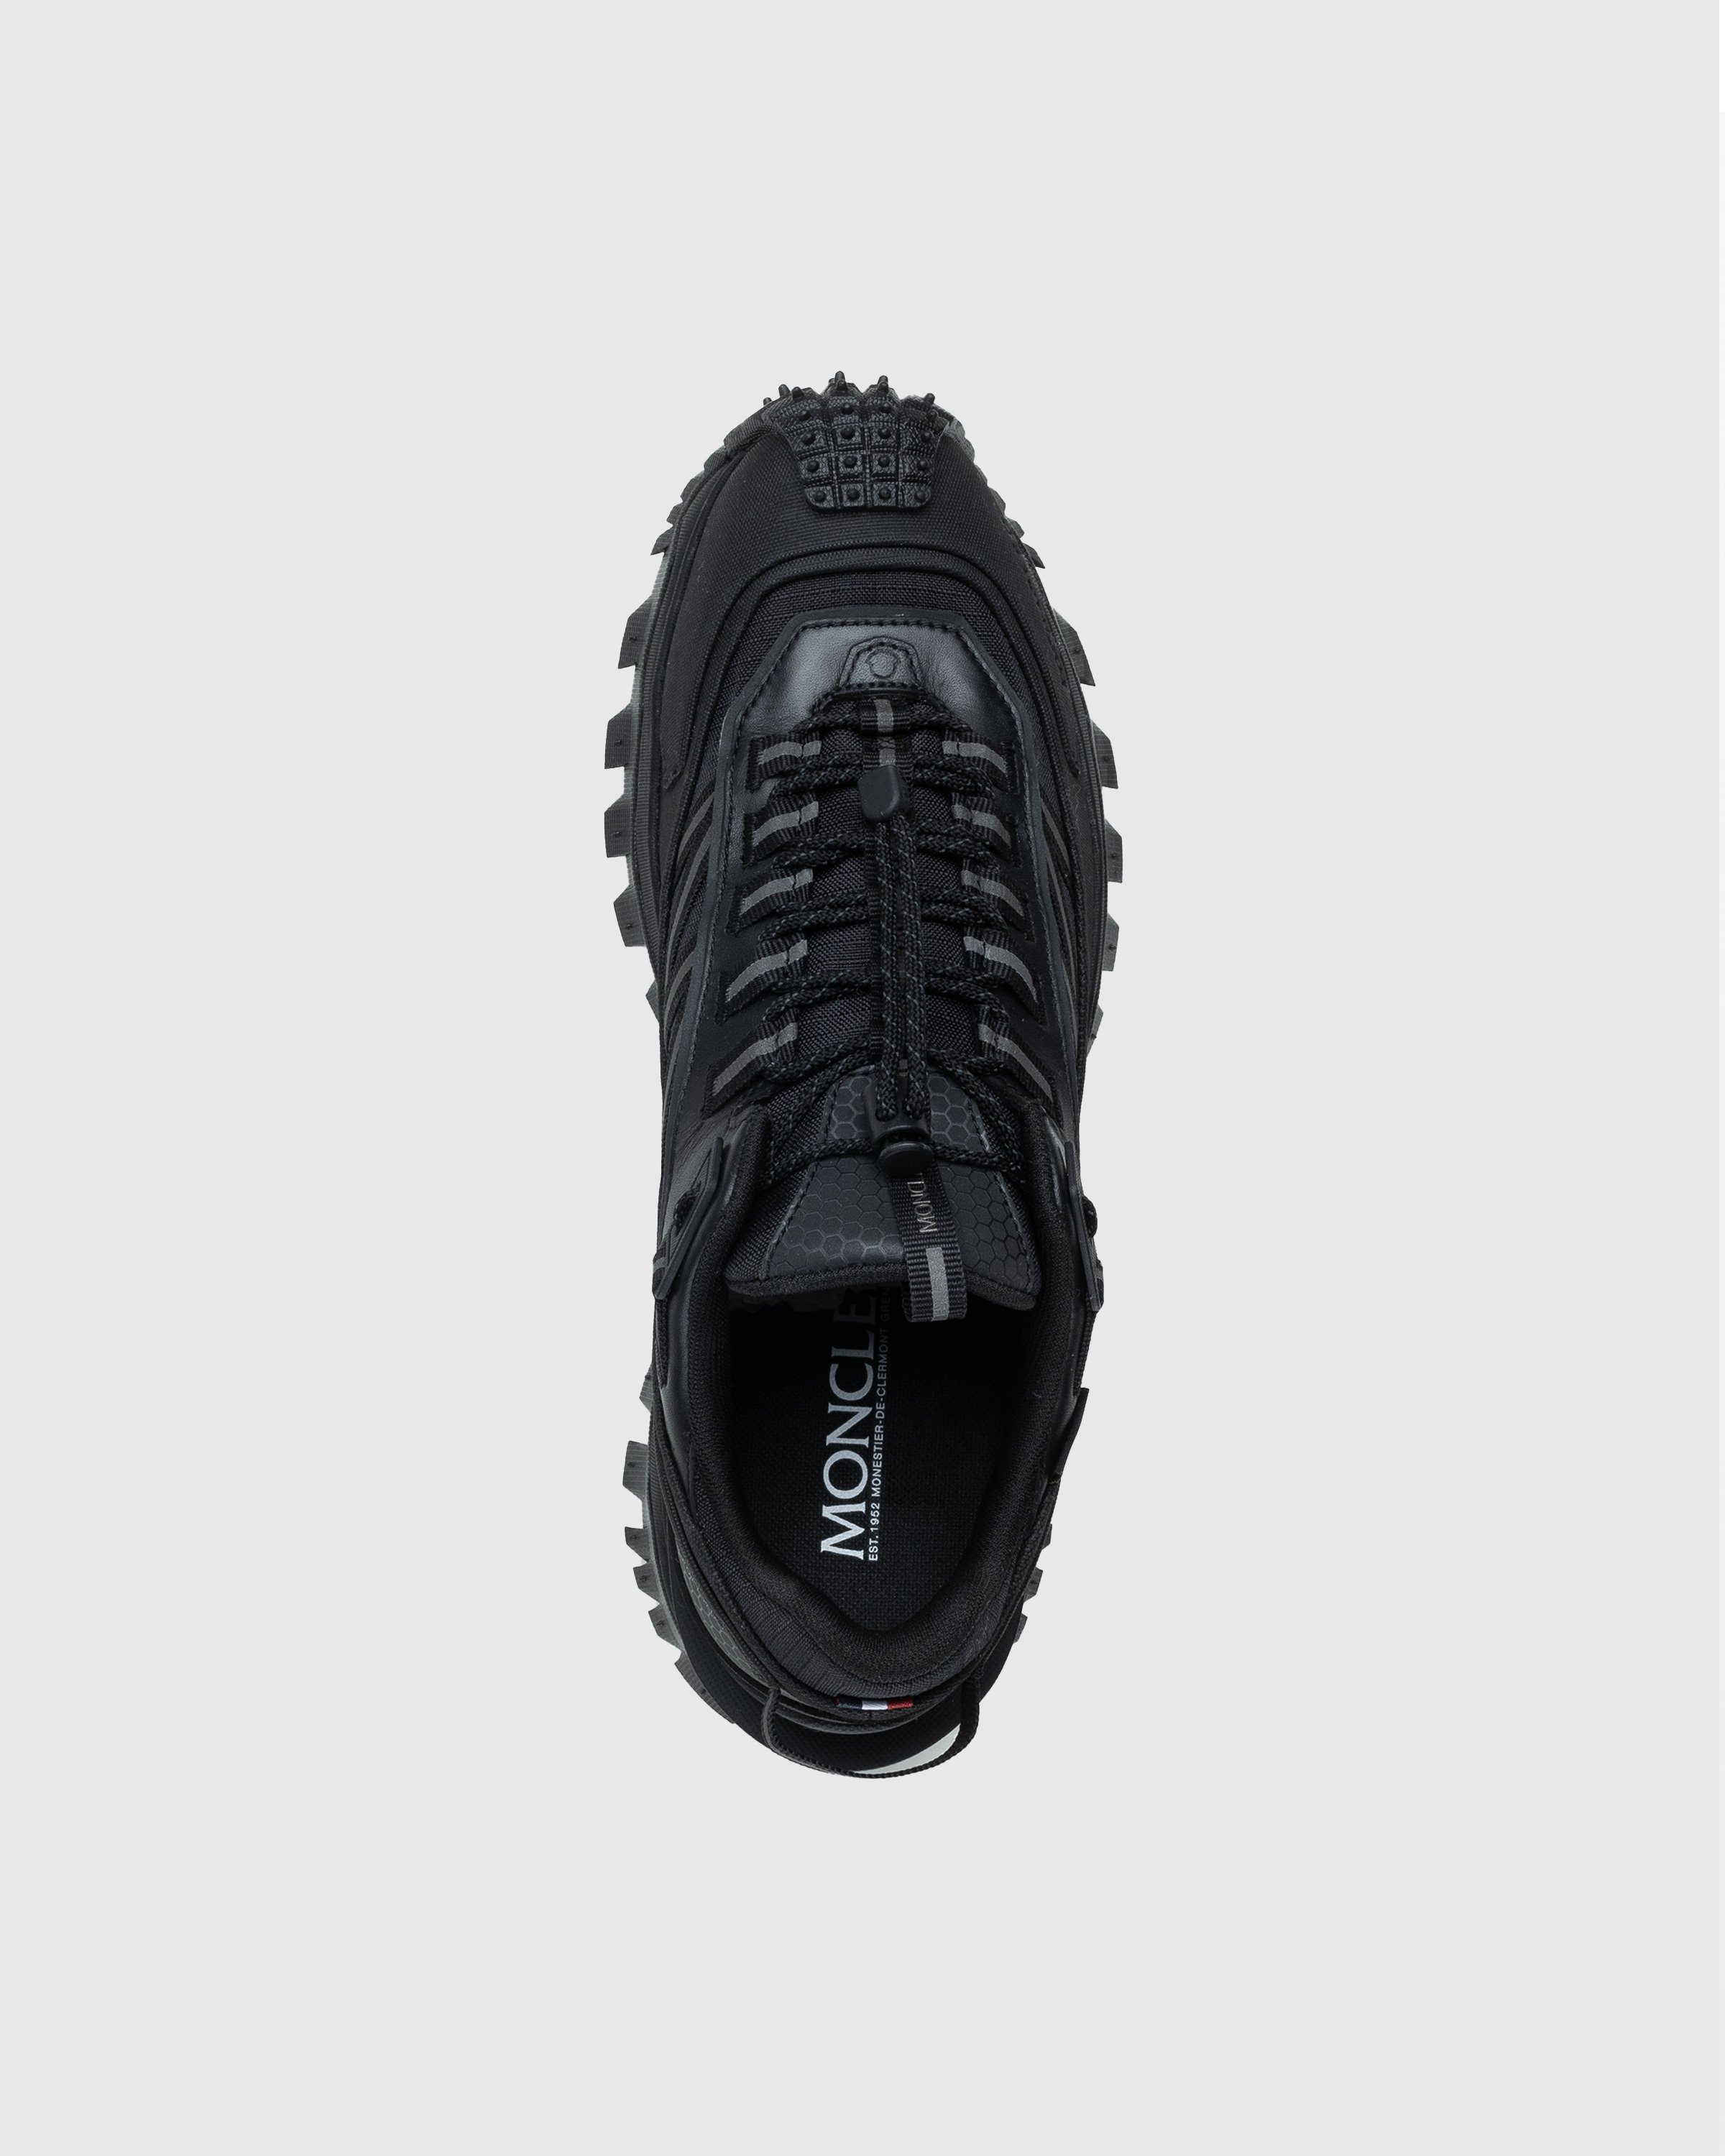 Moncler - Trailgrip Gtx Low Top Sneakers Black - Footwear - Black - Image 5